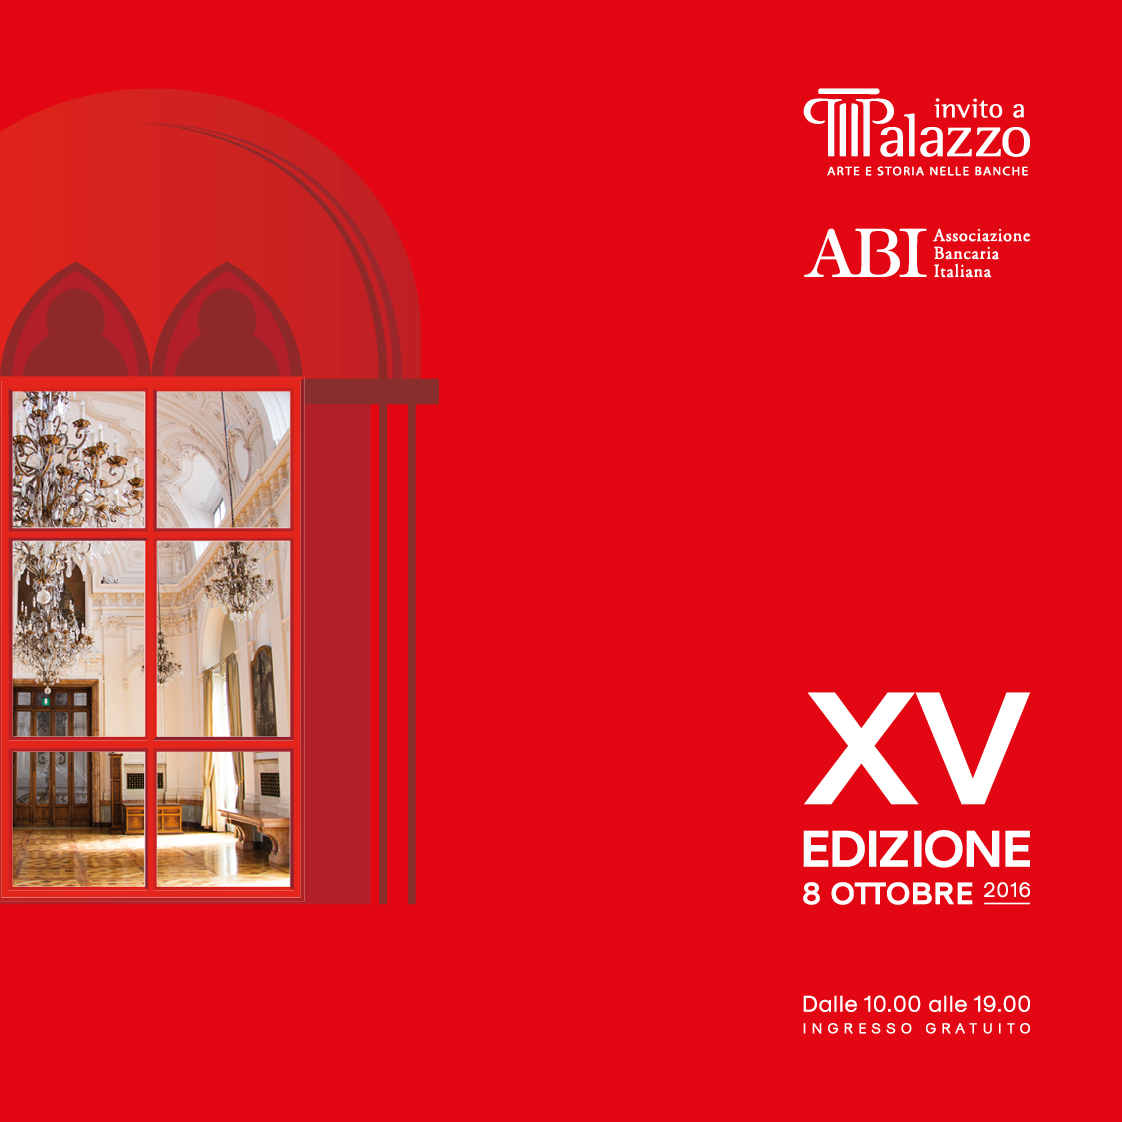 abi Invito a Palzzo brochure design event identity Edizione 2016 Design Inspiration cultural event guide book Poster Design graphic design  book design event marketing